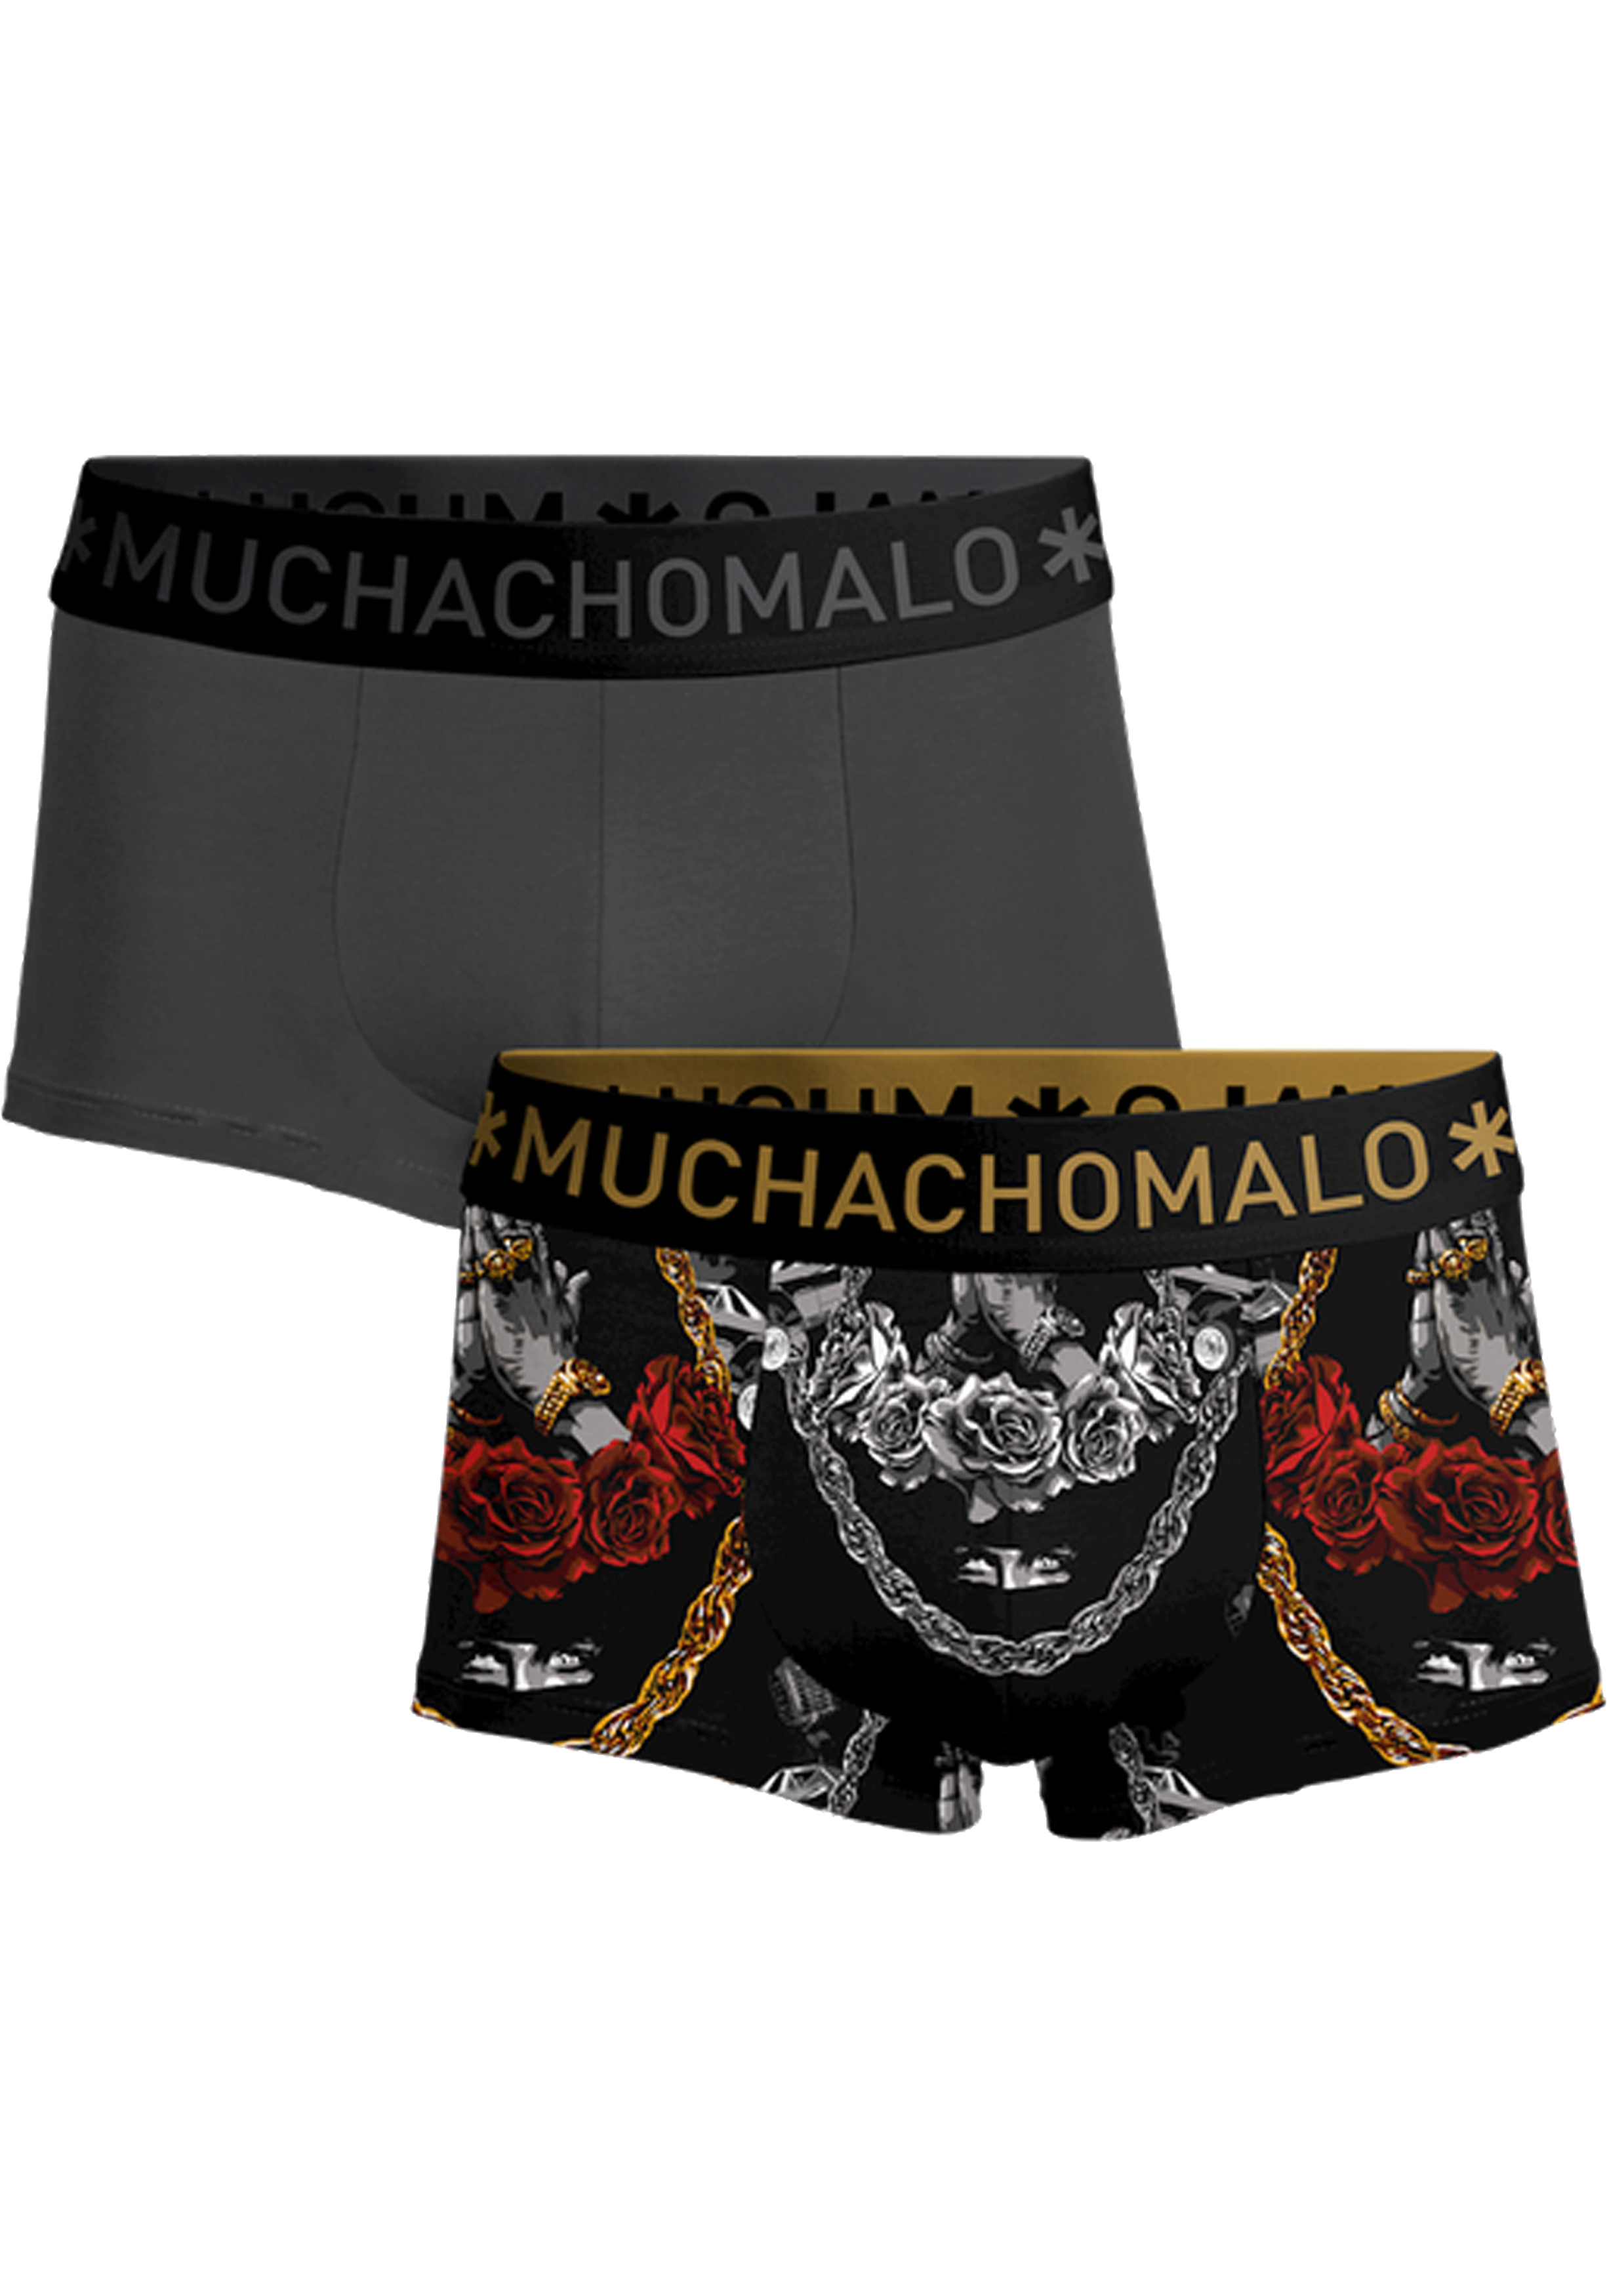 Muchachomalo boxershorts, heren boxers kort (2-pack), Gangsta Paradise